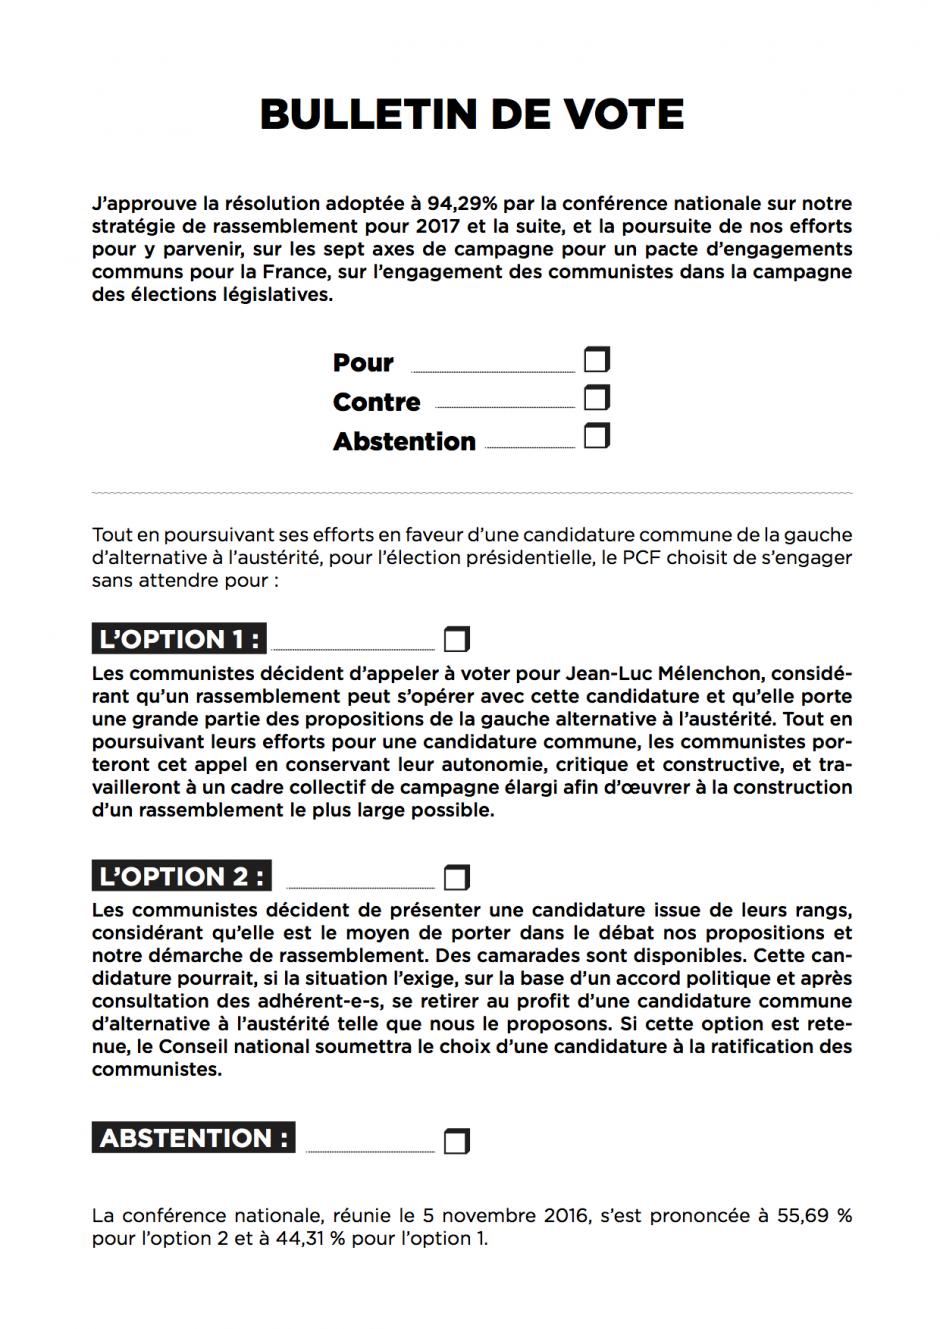 Bulletin de vote de la consultation des communistes - France, 24 au 26 novembre 2016